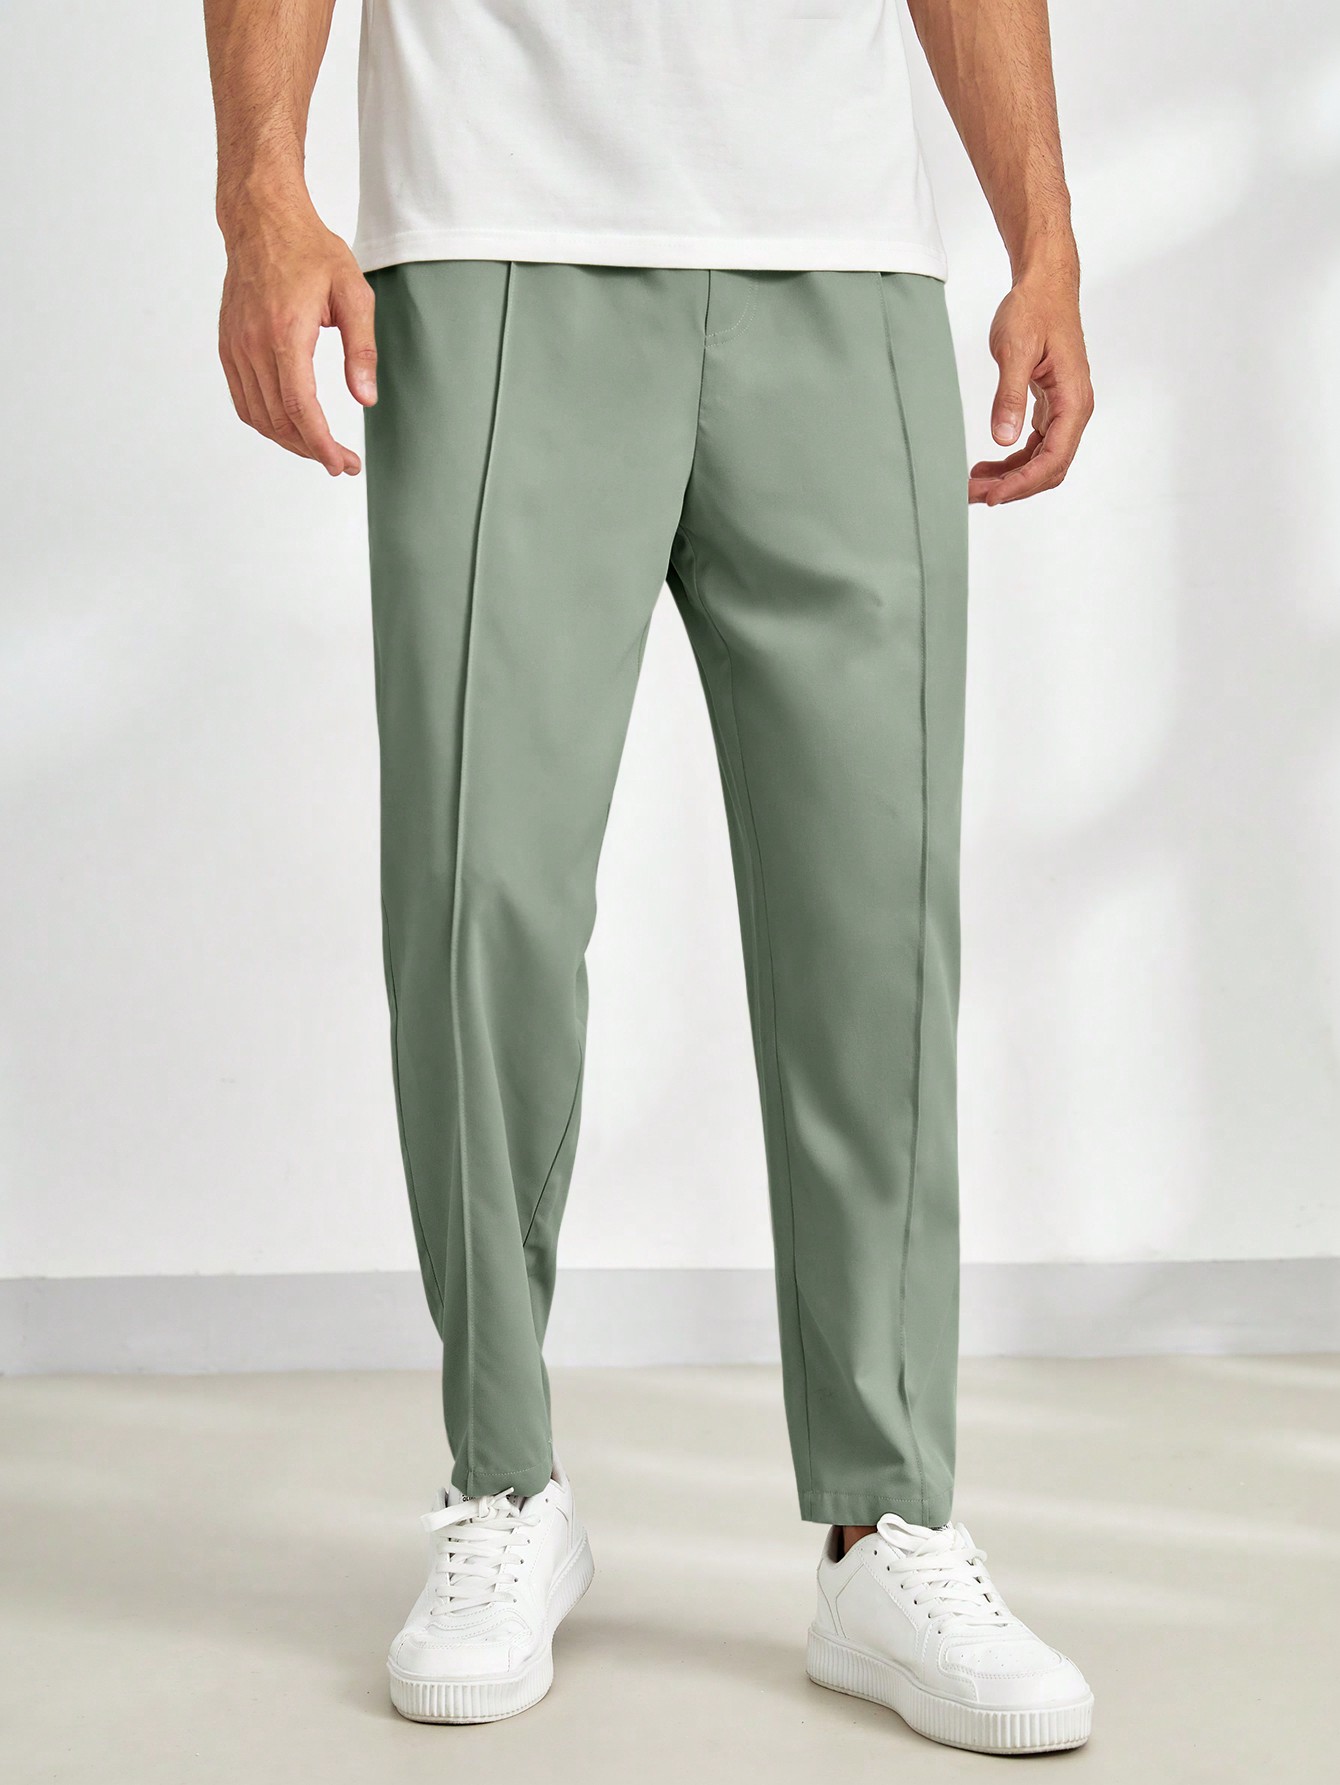 Мужские однотонные повседневные зауженные брюки Manfinity Homme с эластичной резинкой на талии, зеленый